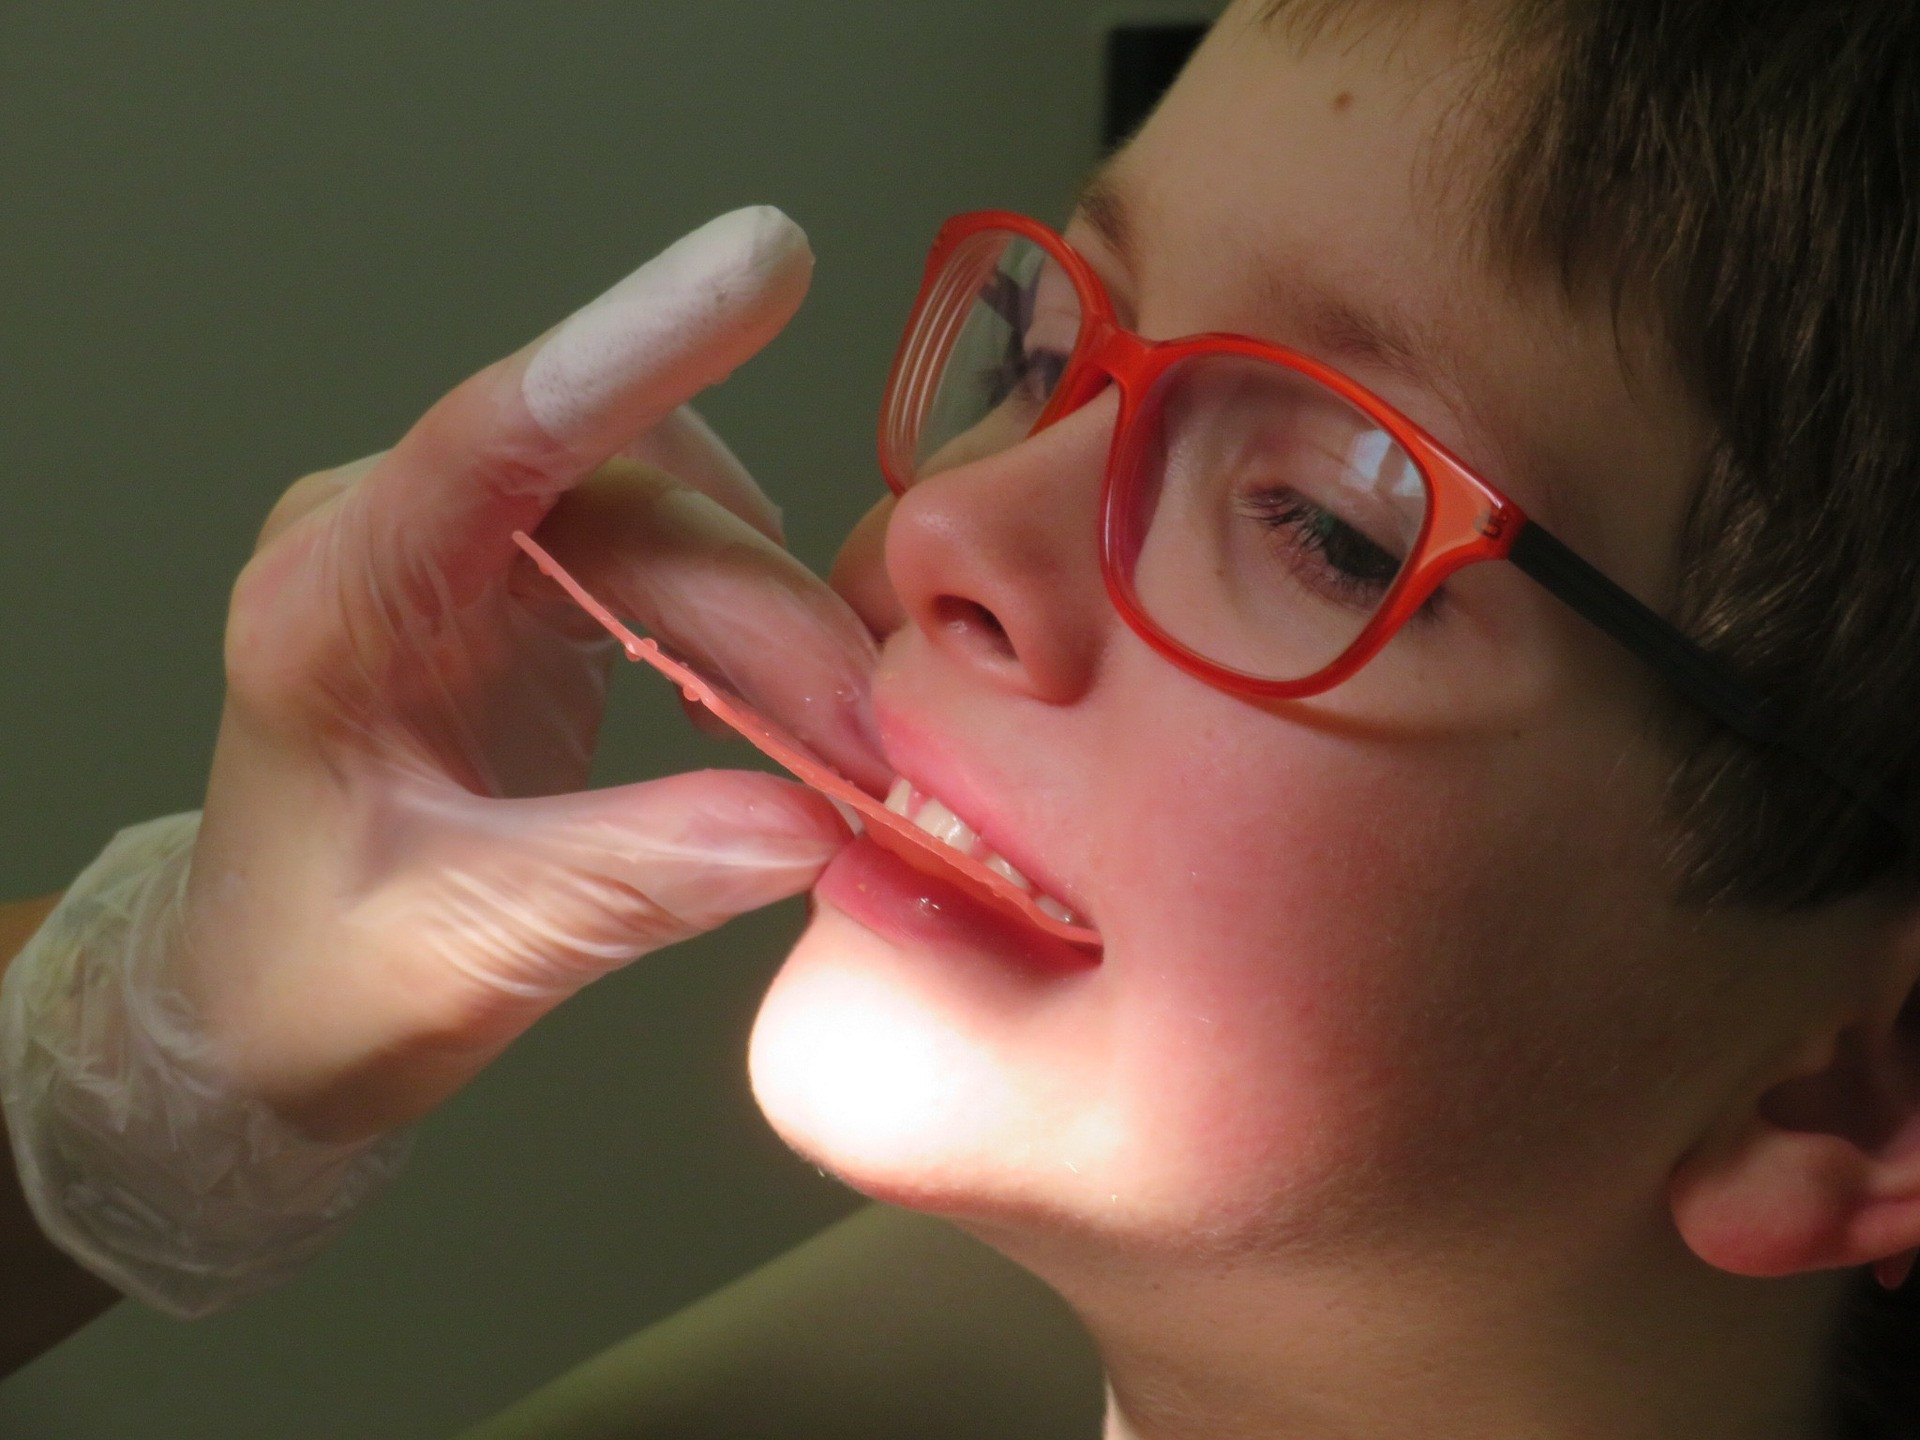 'Domena osebnega zobozdravnika je, da pravočasno prepozna tista stanja pri otroku, ki jih je treba reševati prej oz. čimprej. Pomembna je pravočasno prepoznavanje staršev, ki lahko sami opazijo, da otrok diha na usta.'